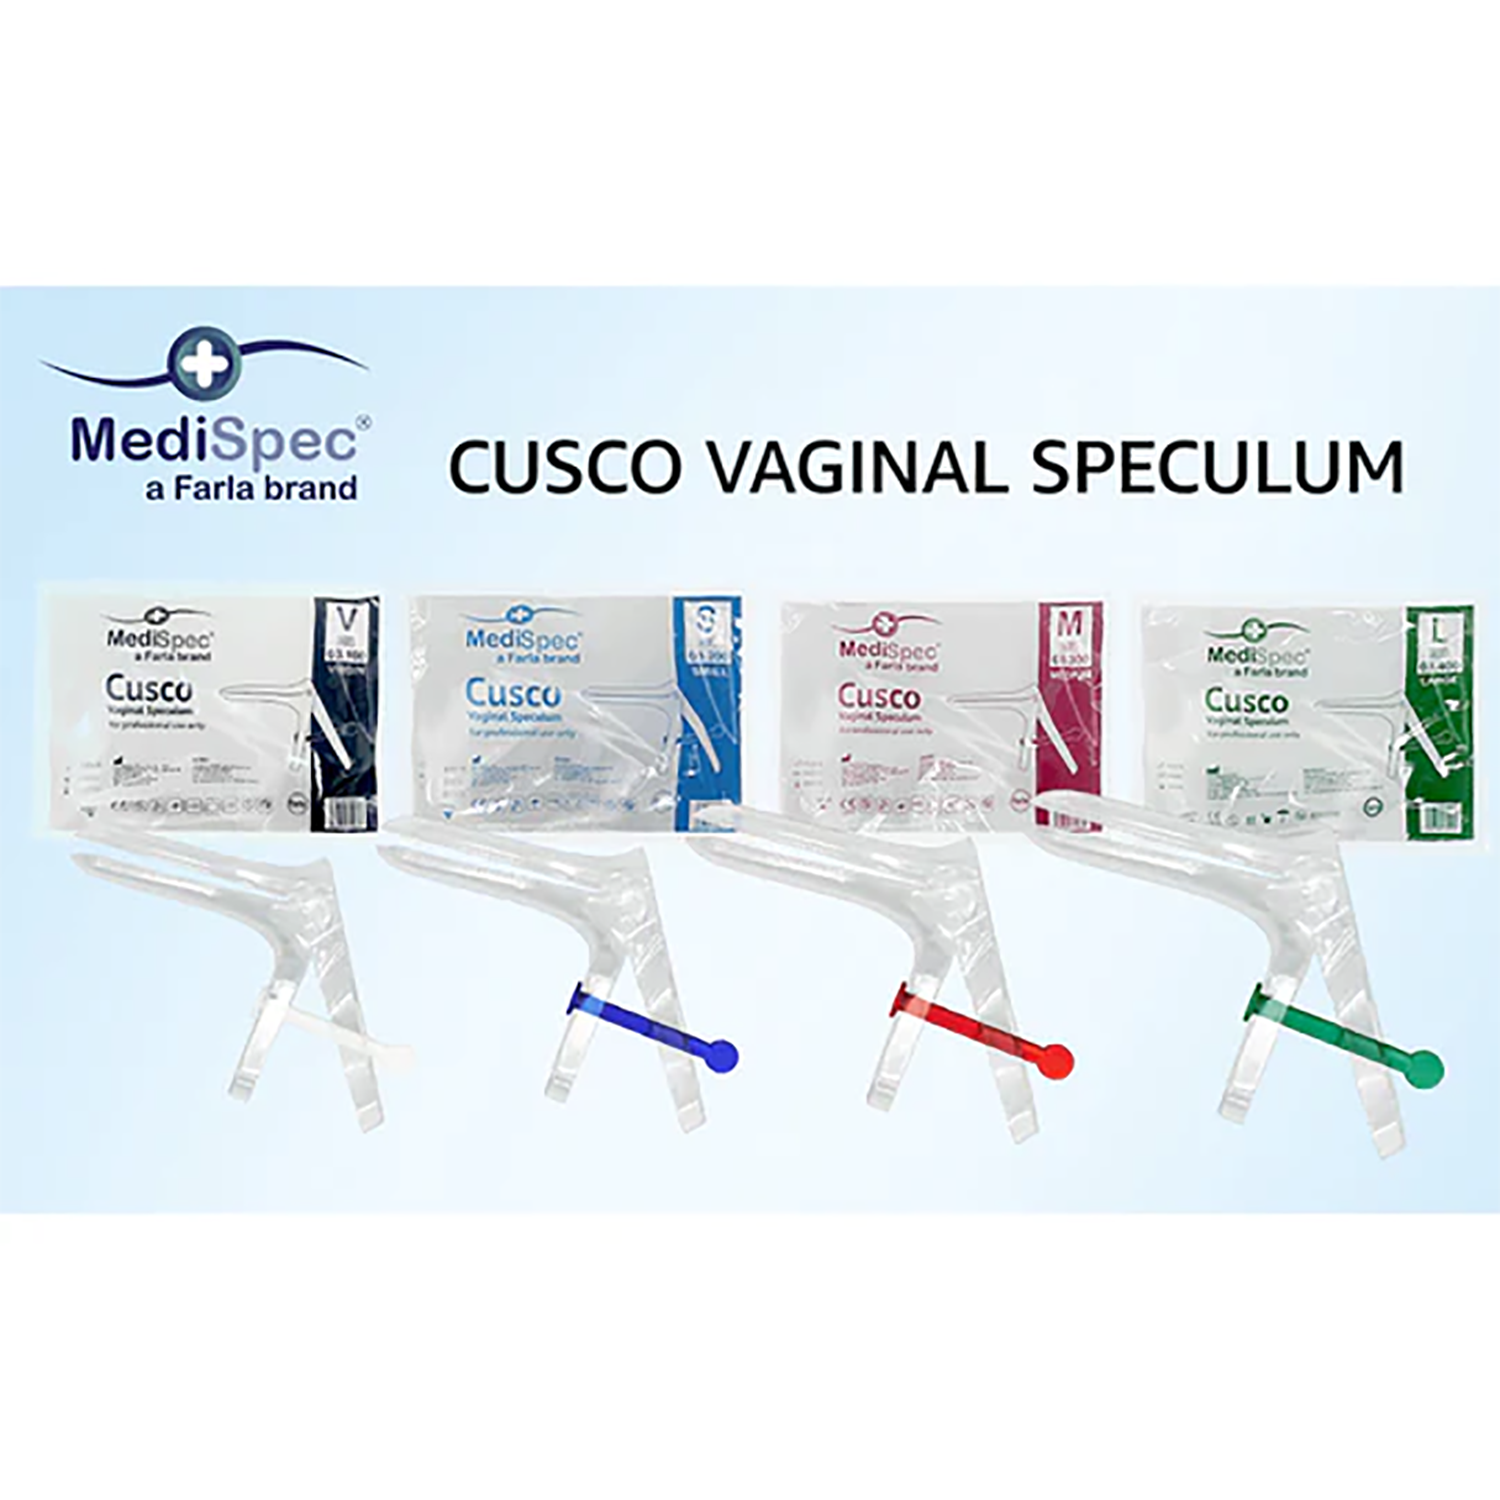 MediSpec Cusco Vaginal Speculum (Locking Mechanism) | Pack of 25 (7)